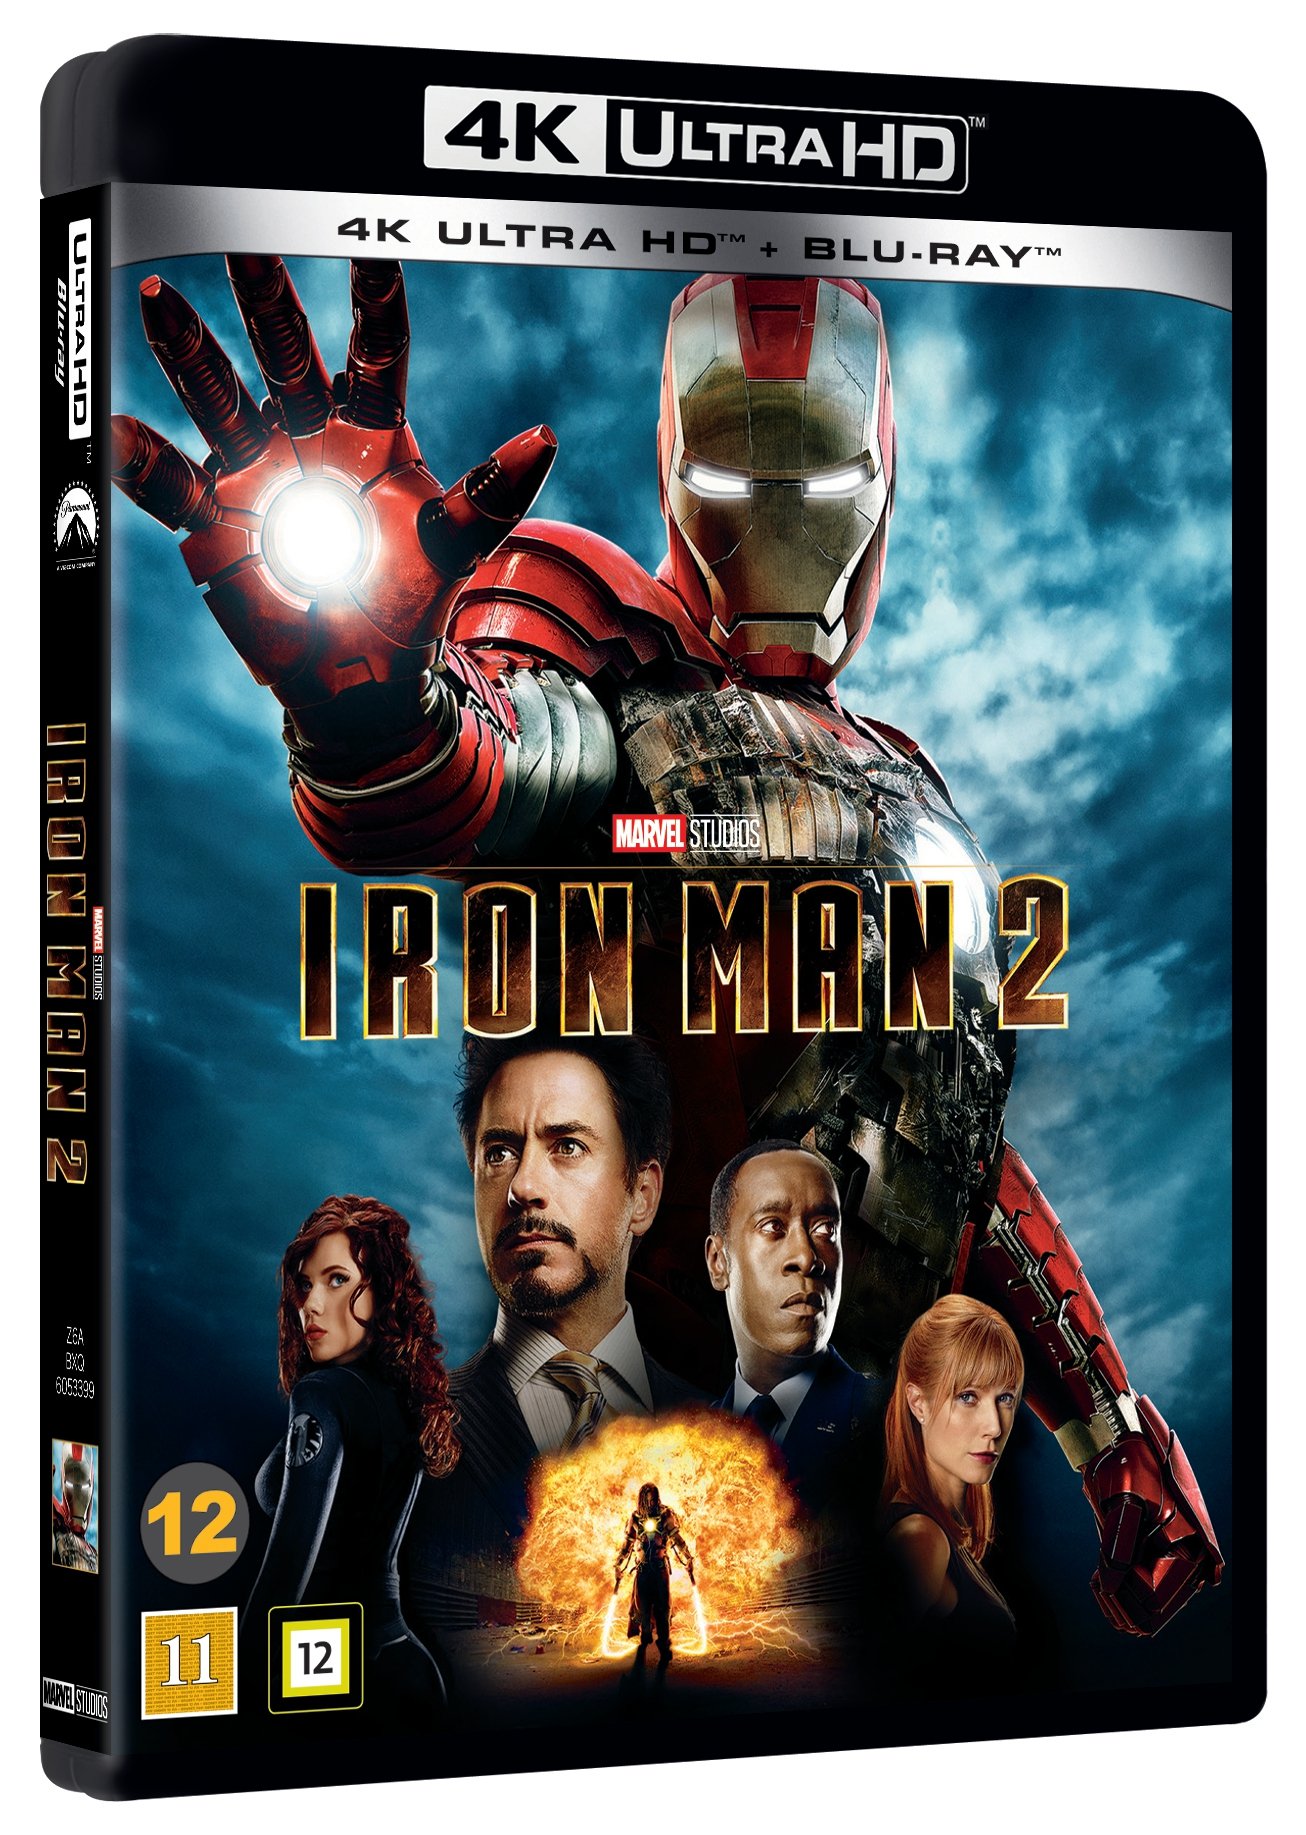 download iron man 2 in full hd pc in hindi